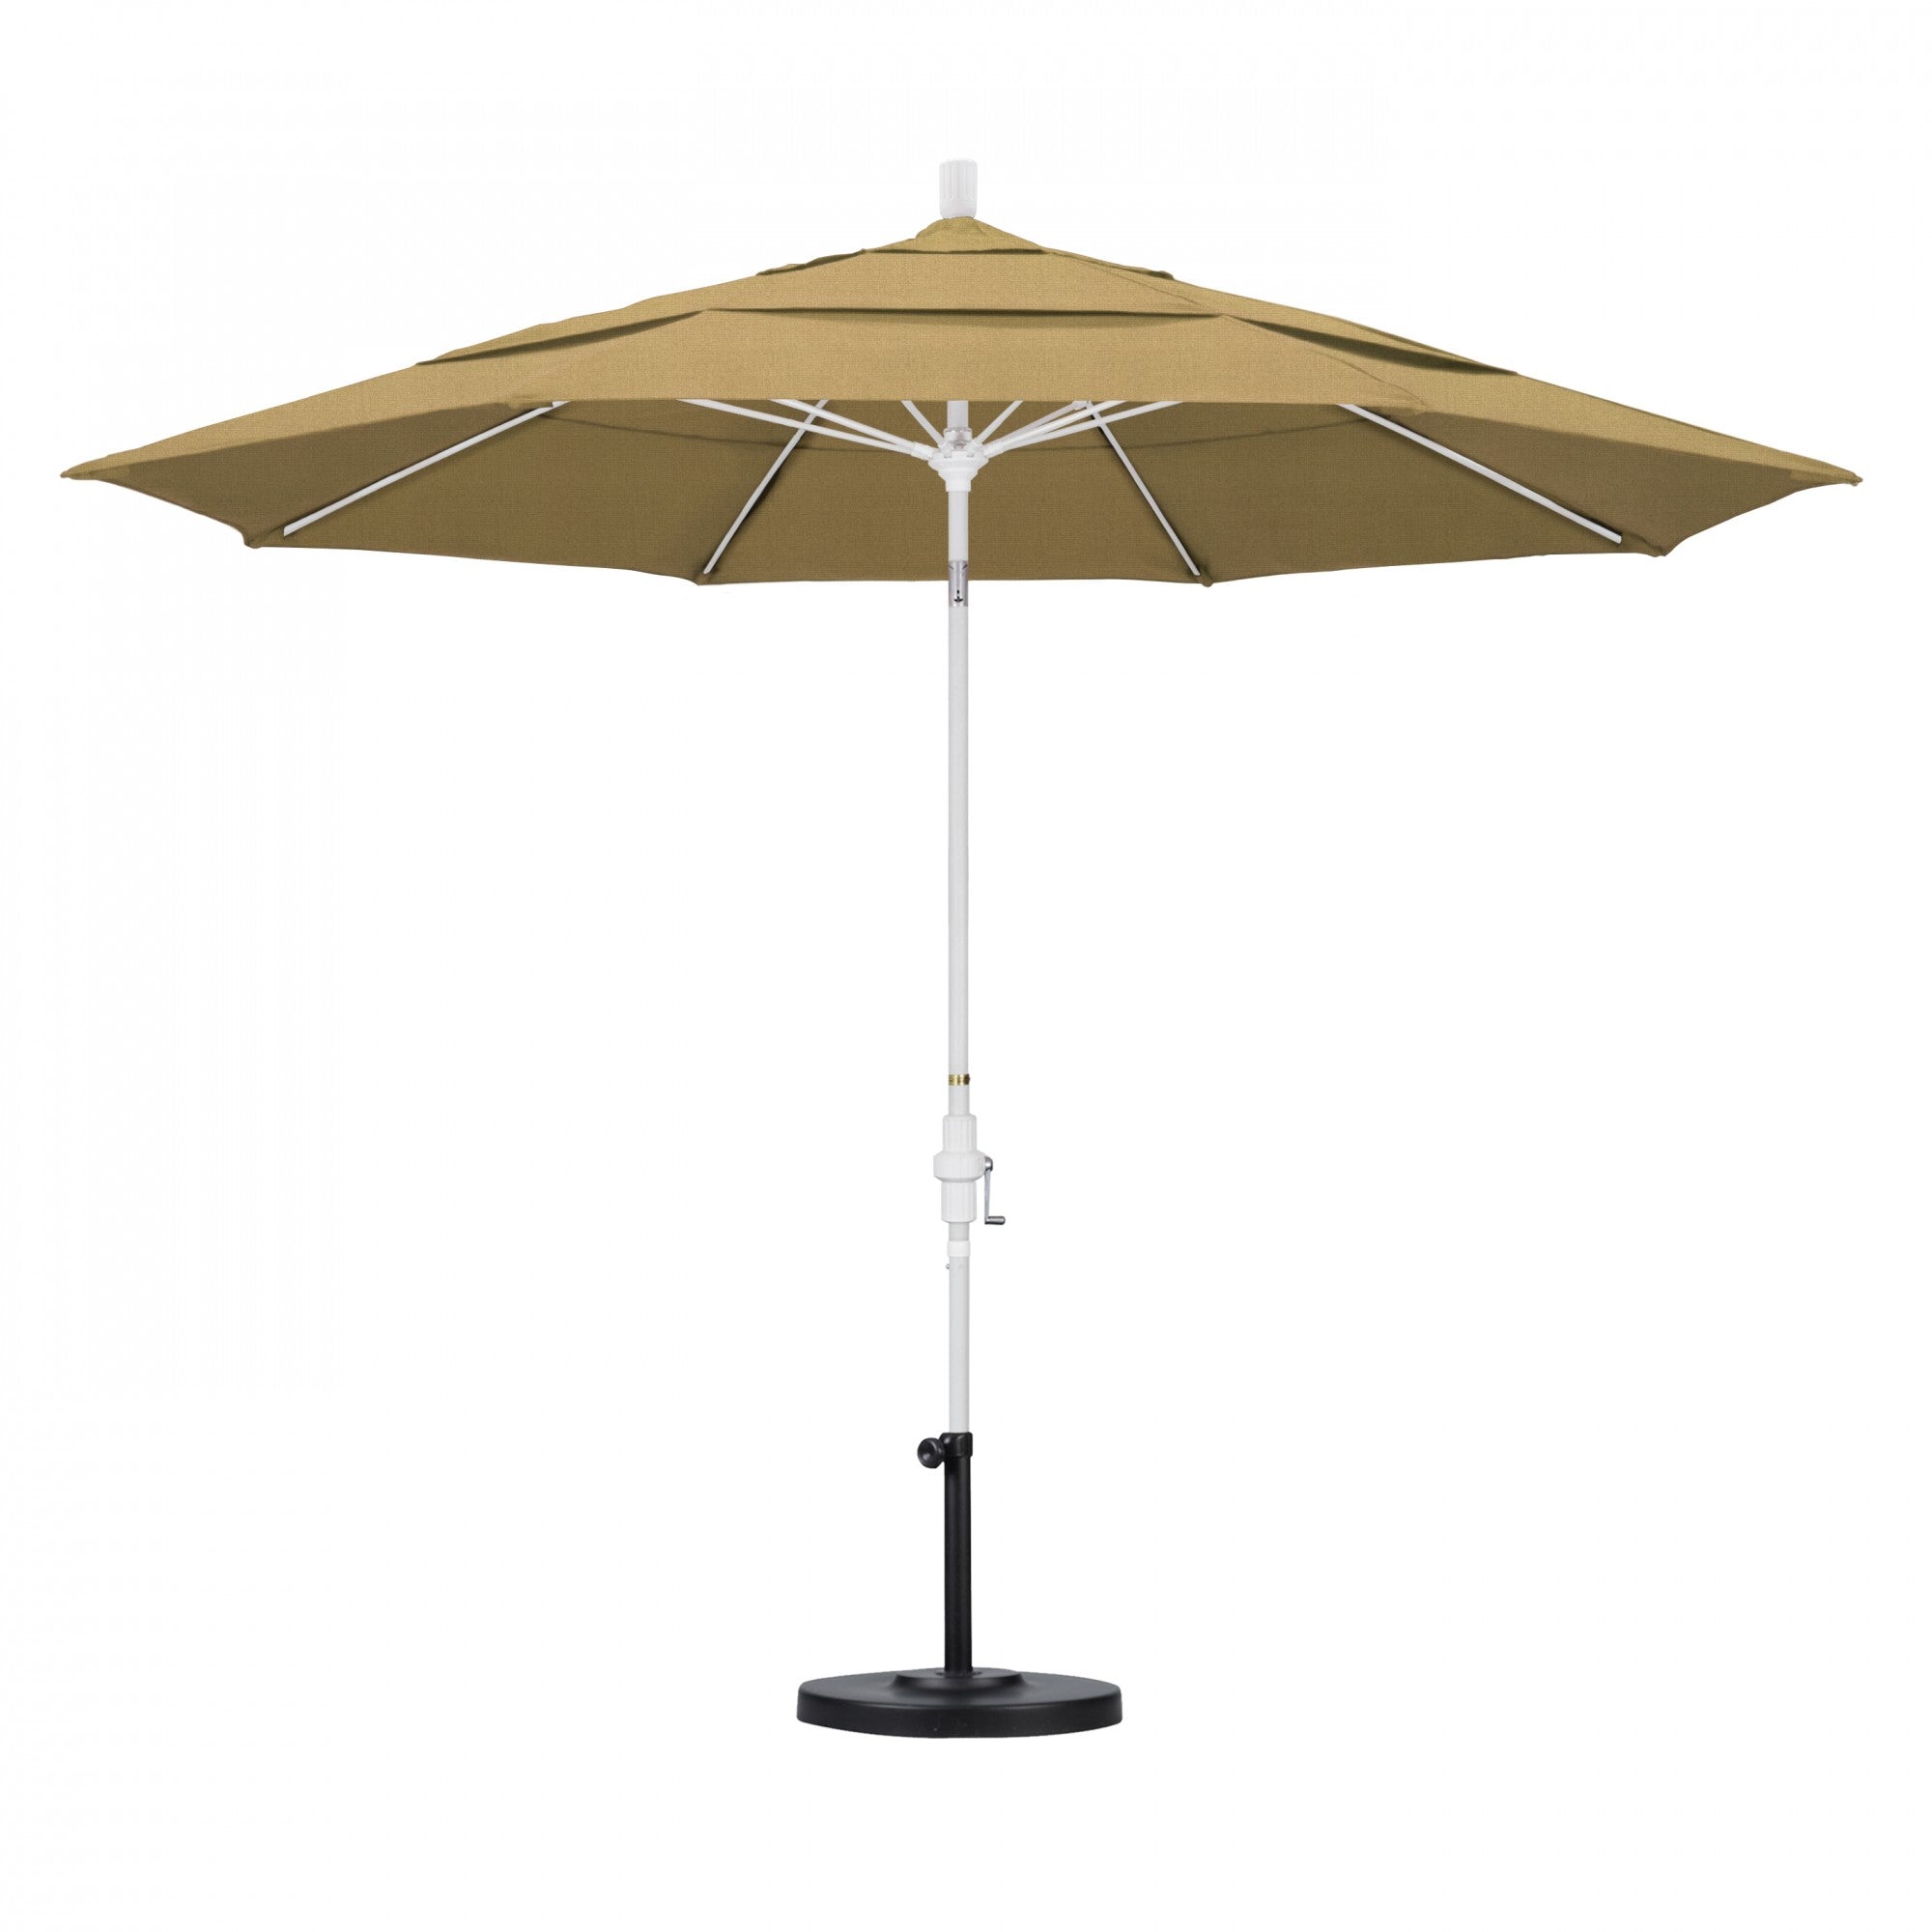 California Umbrella - 11' - Patio Umbrella Umbrella - Aluminum Pole - Champagne - Olefin - GSCUF118170-F67-DWV